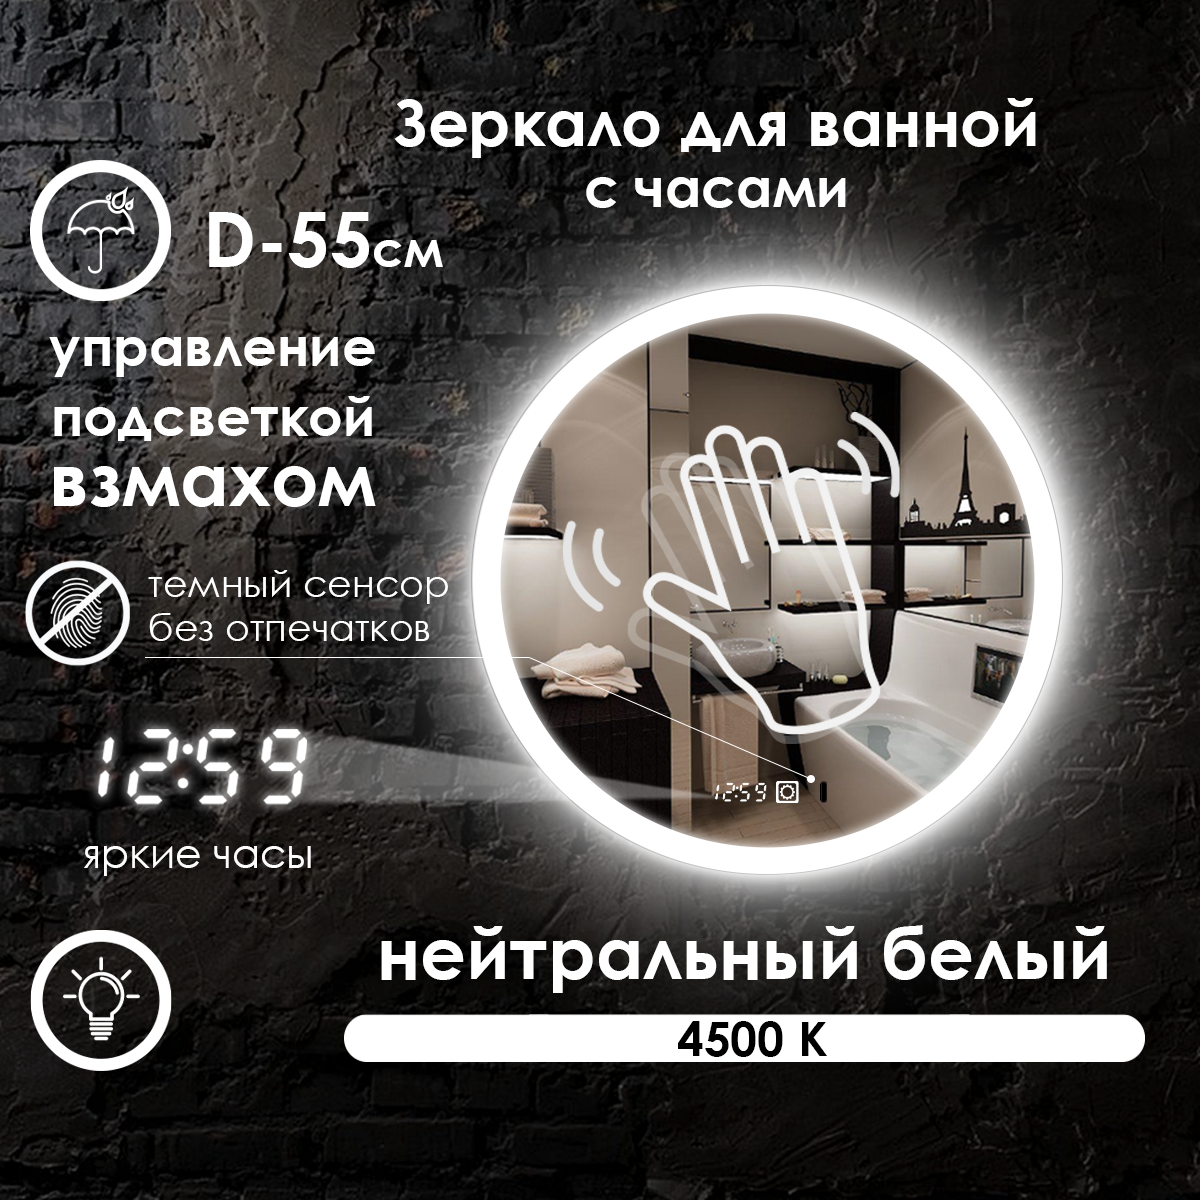 Зеркало для ванной Villanelle с управлением взмахом руки, нейтральная подсветка 4500К, часы, диммер, 55 см